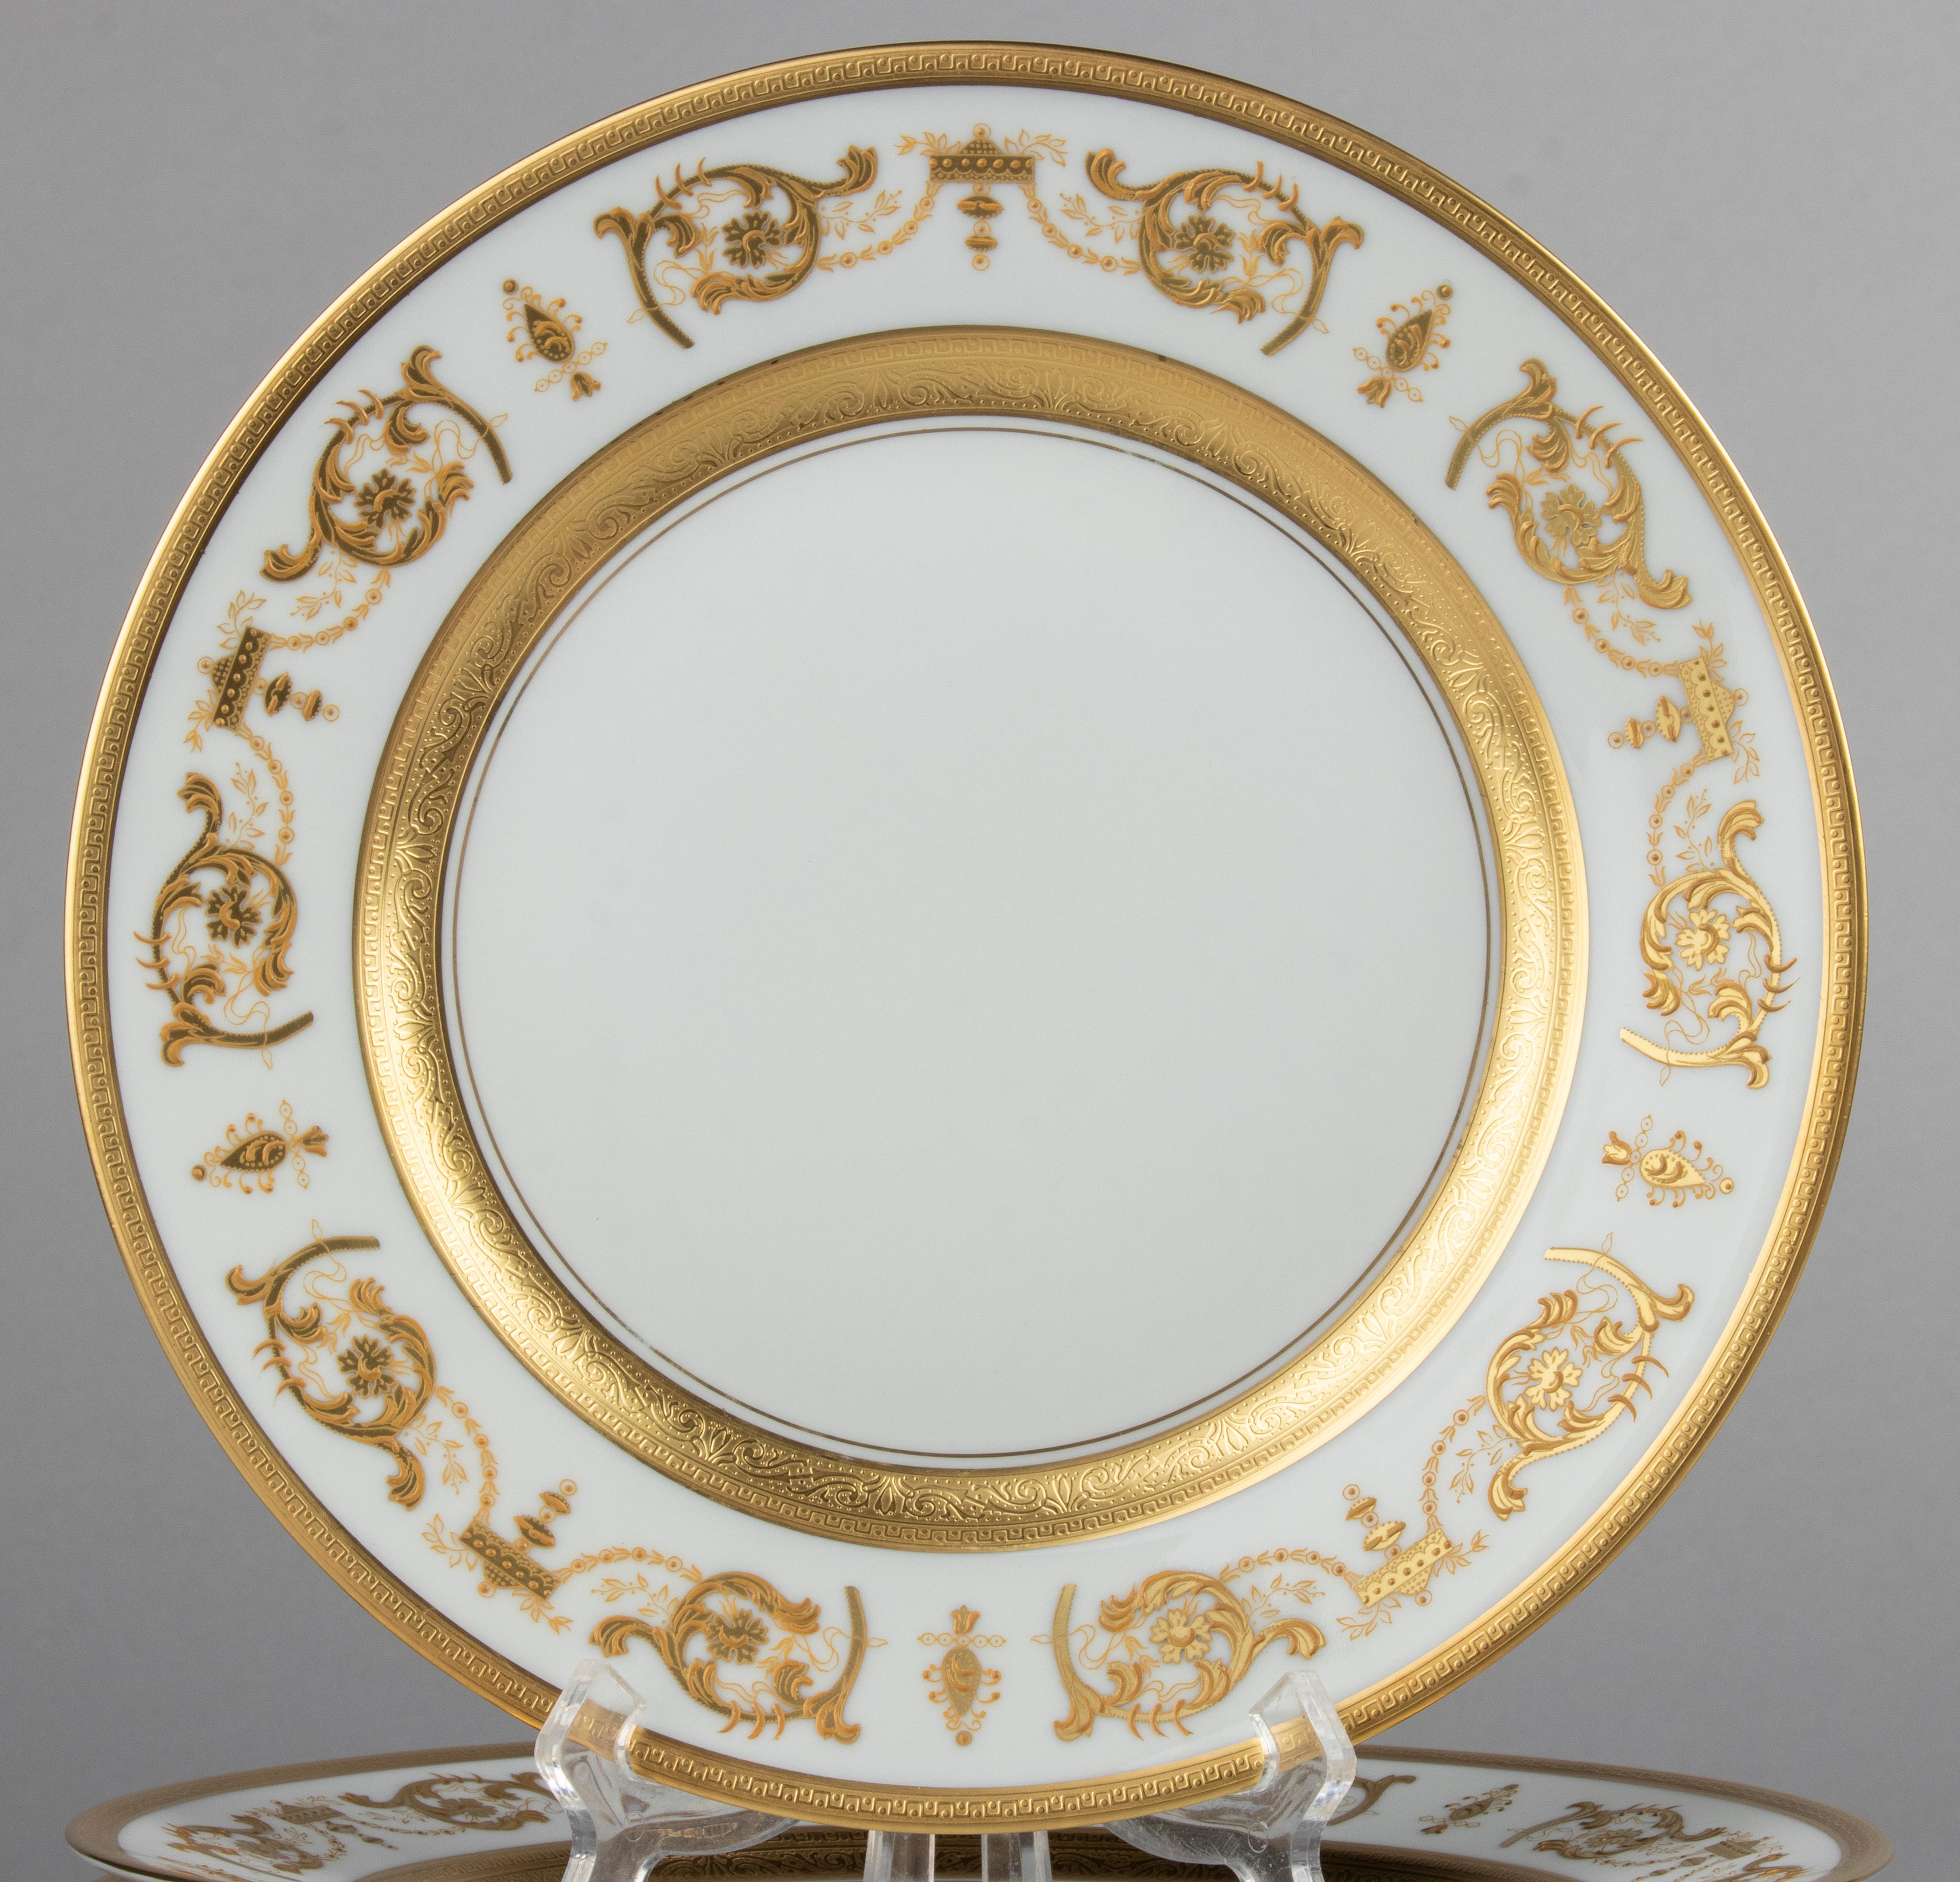 Hand-Crafted Set of 6 Porcelain Dinner Plates made by Haviland model Impérator Or